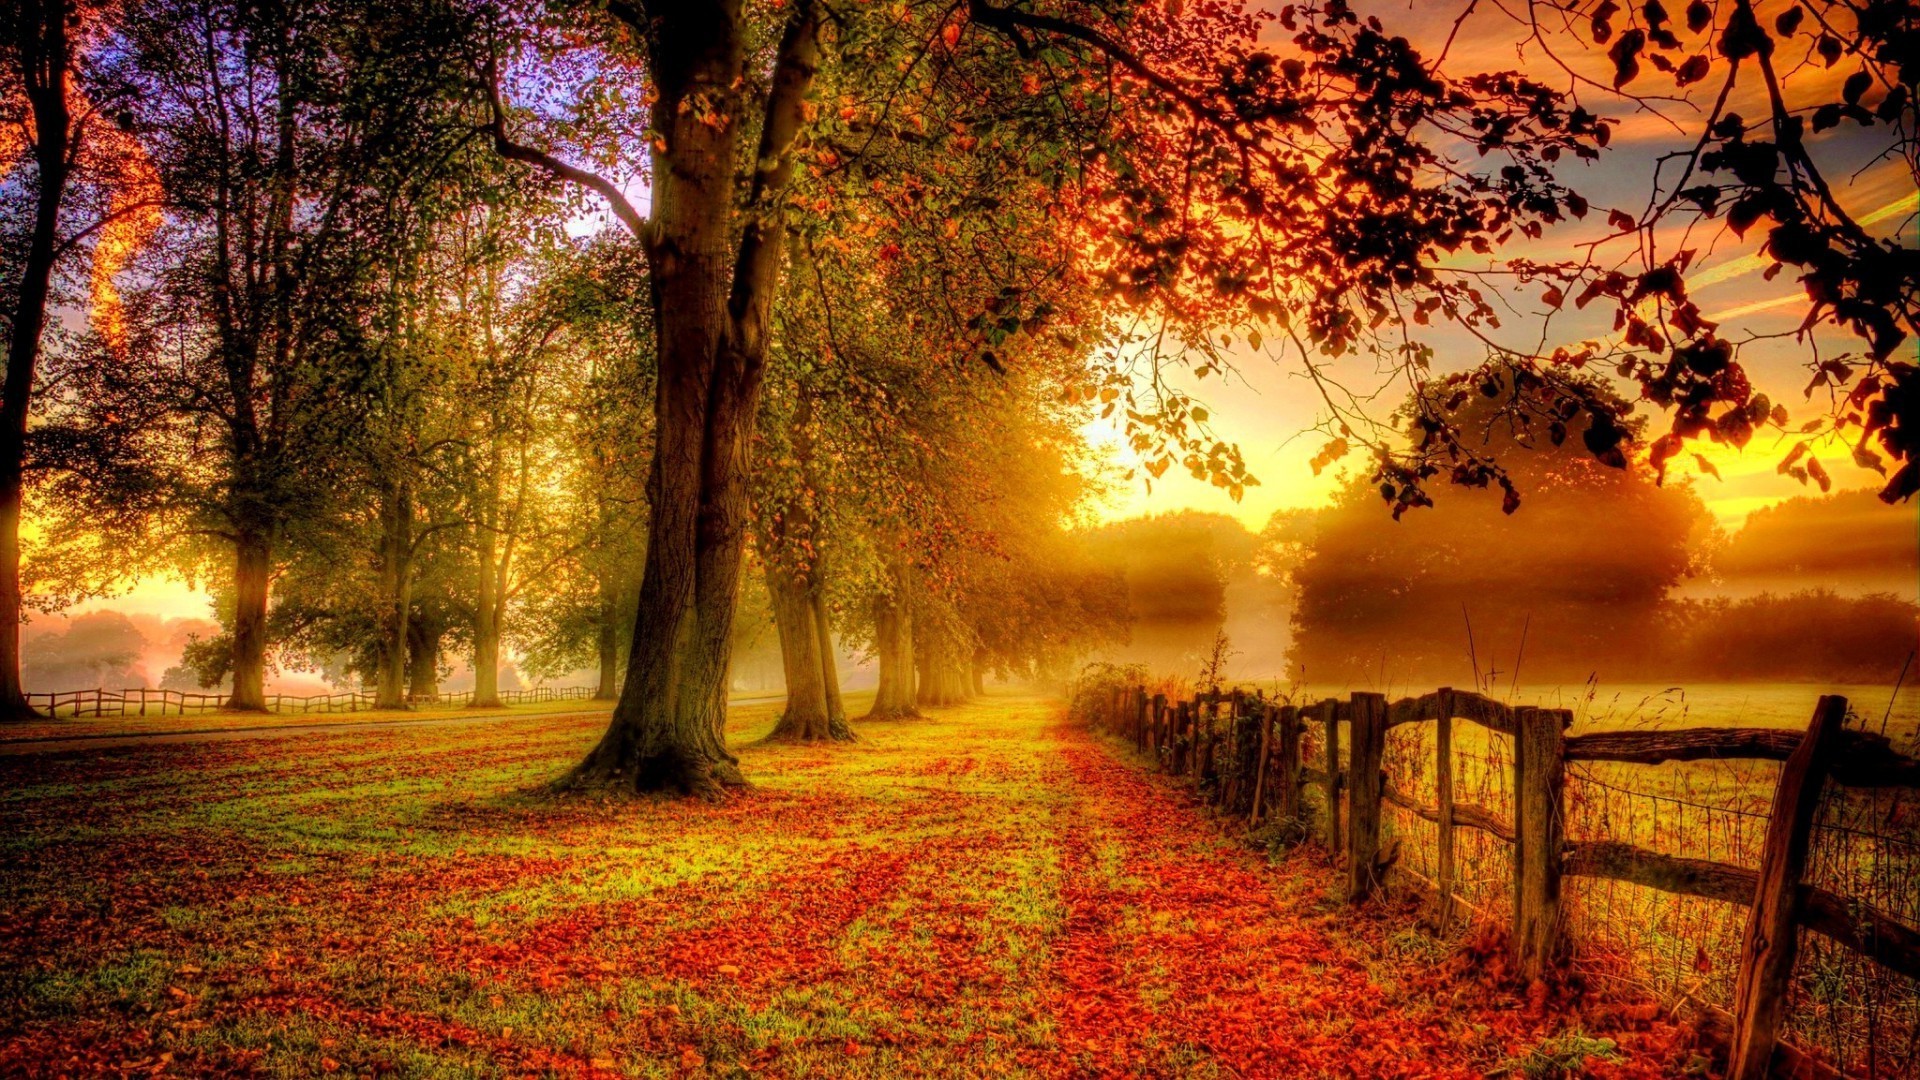 Sunset, fence, trees, foliage, autumn